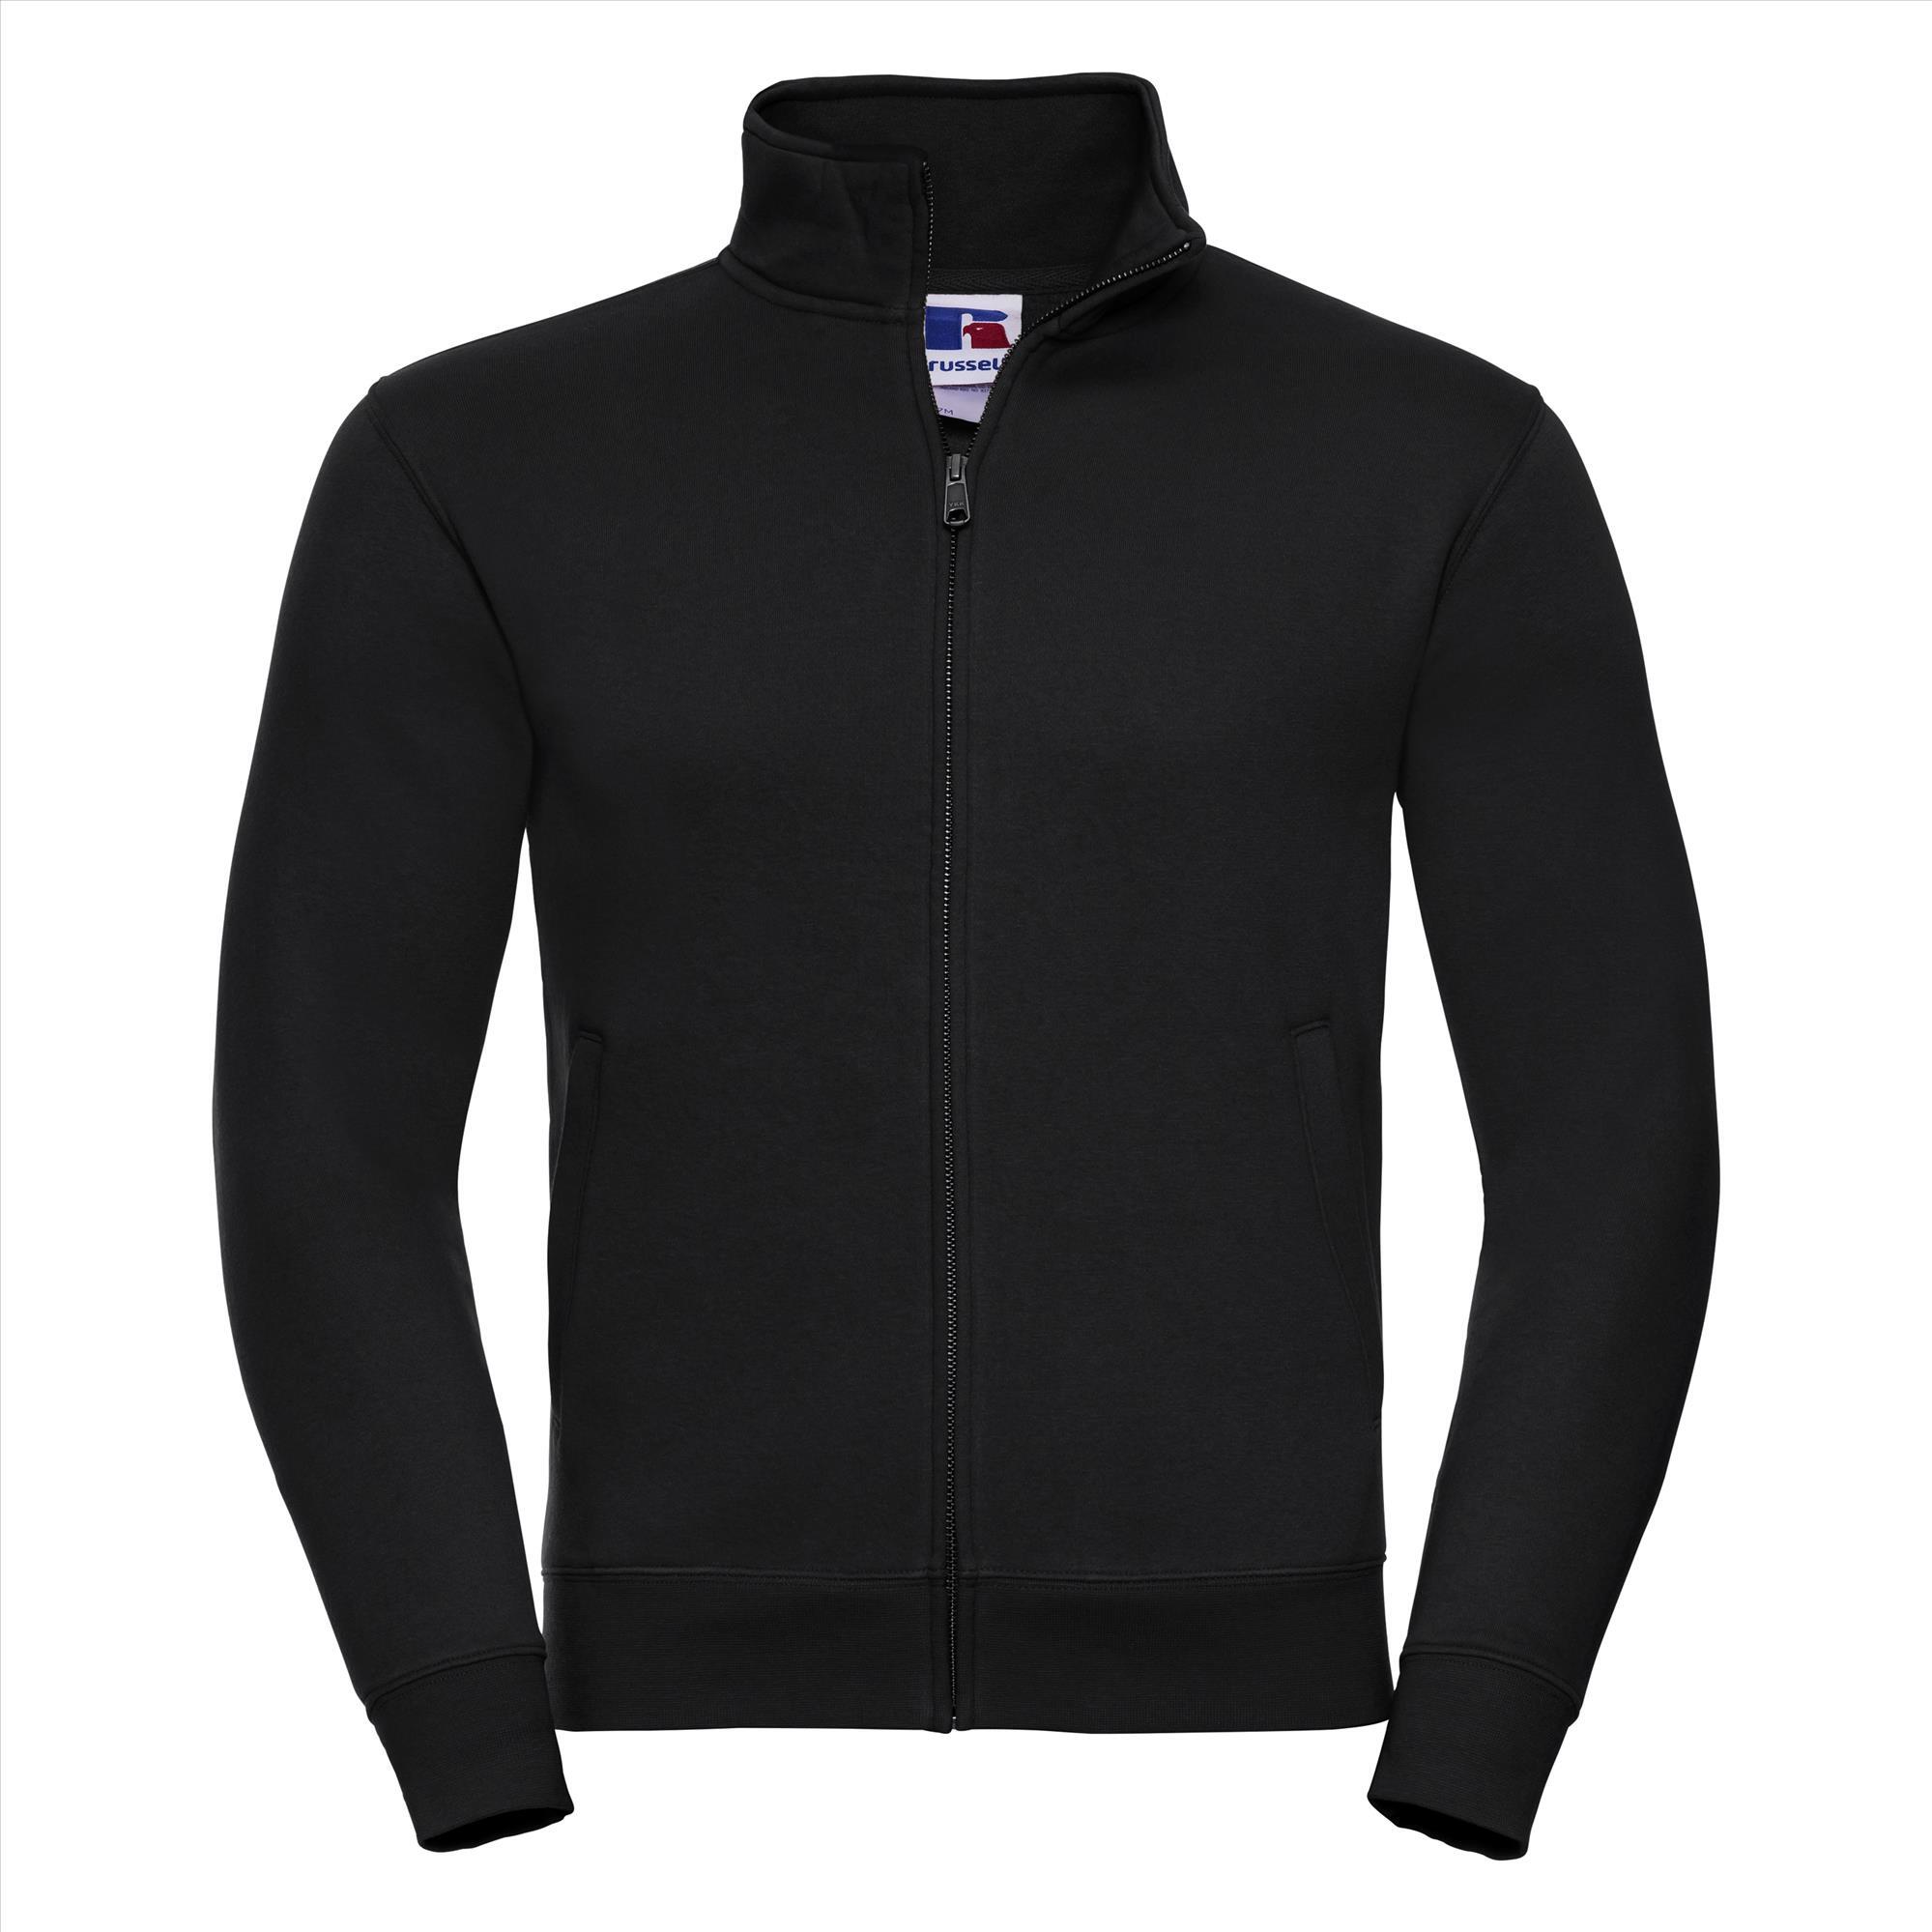 Sweatjacket zwart voor mannen perfect voor persoonlijke bedrukking personaliseren